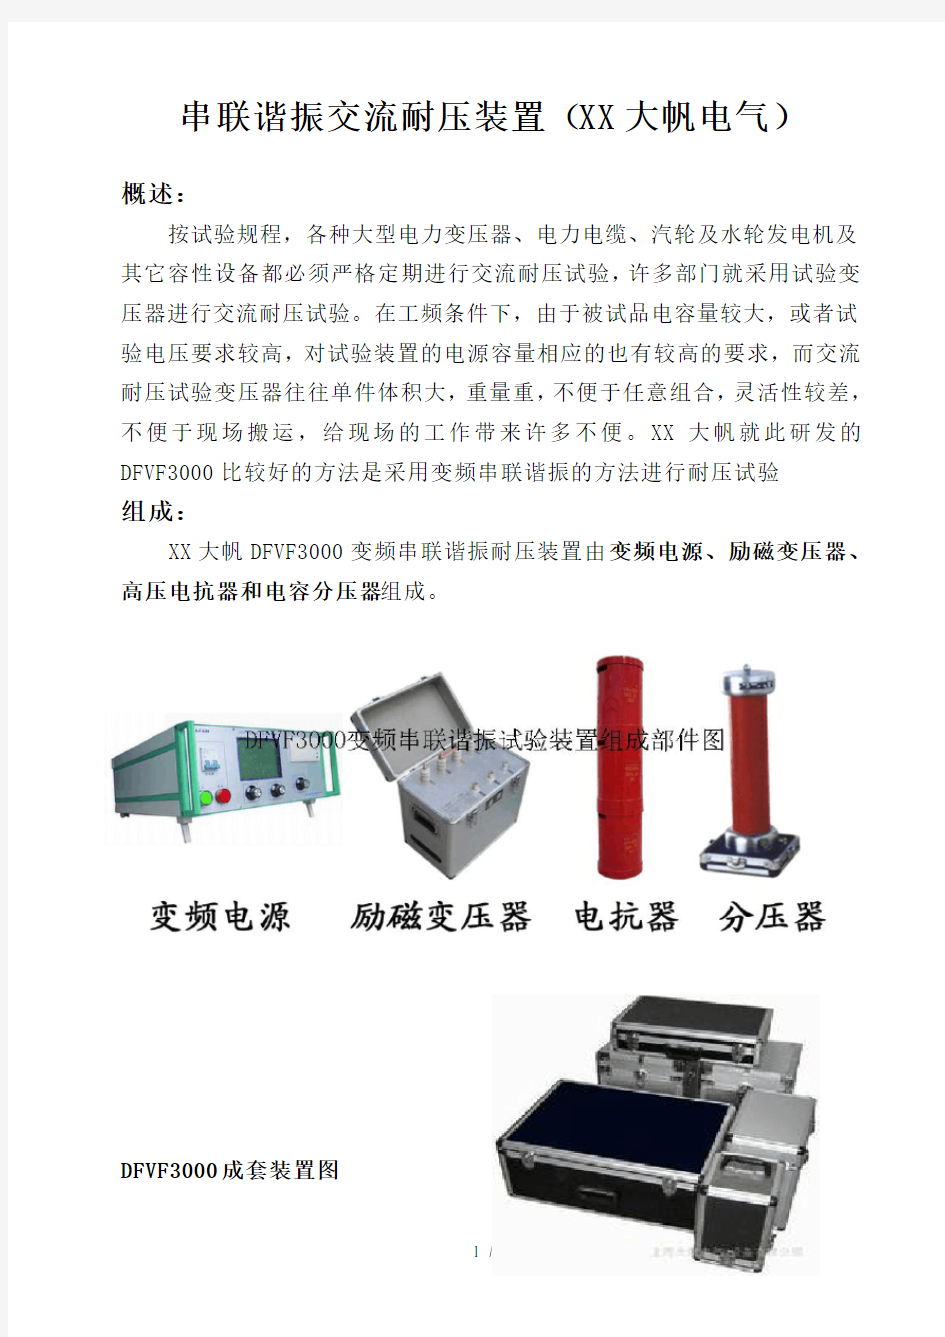 串联谐振耐压装置 上海大帆电气设备有限公司